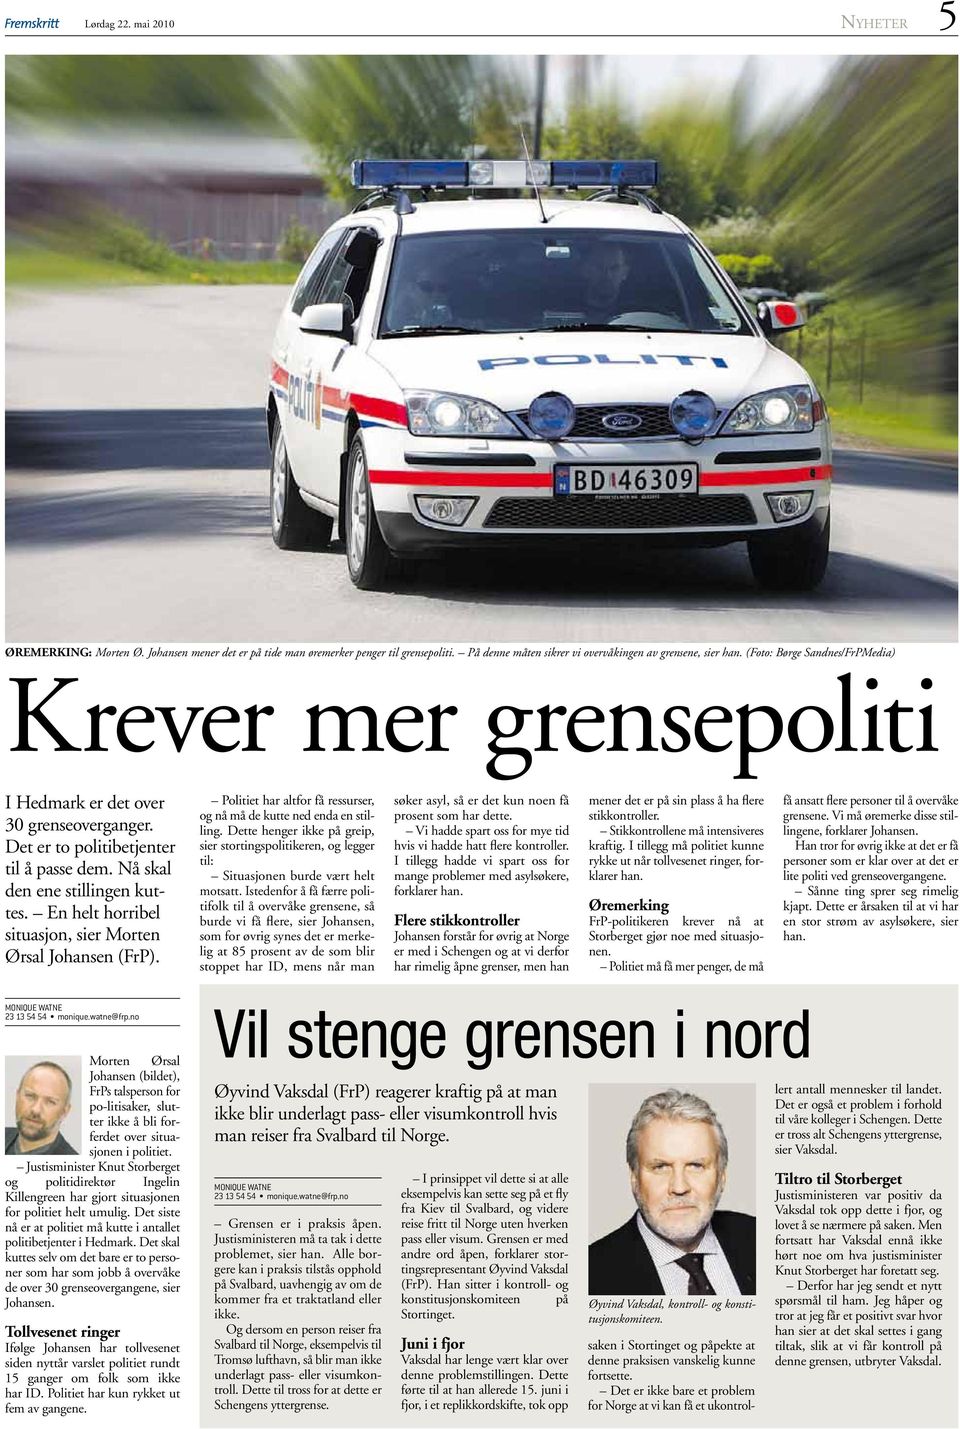 En helt horribel situasjon, sier Morten Ørsal Johansen (FrP). Politiet har altfor få ressurser, og nå må de kutte ned enda en stilling.